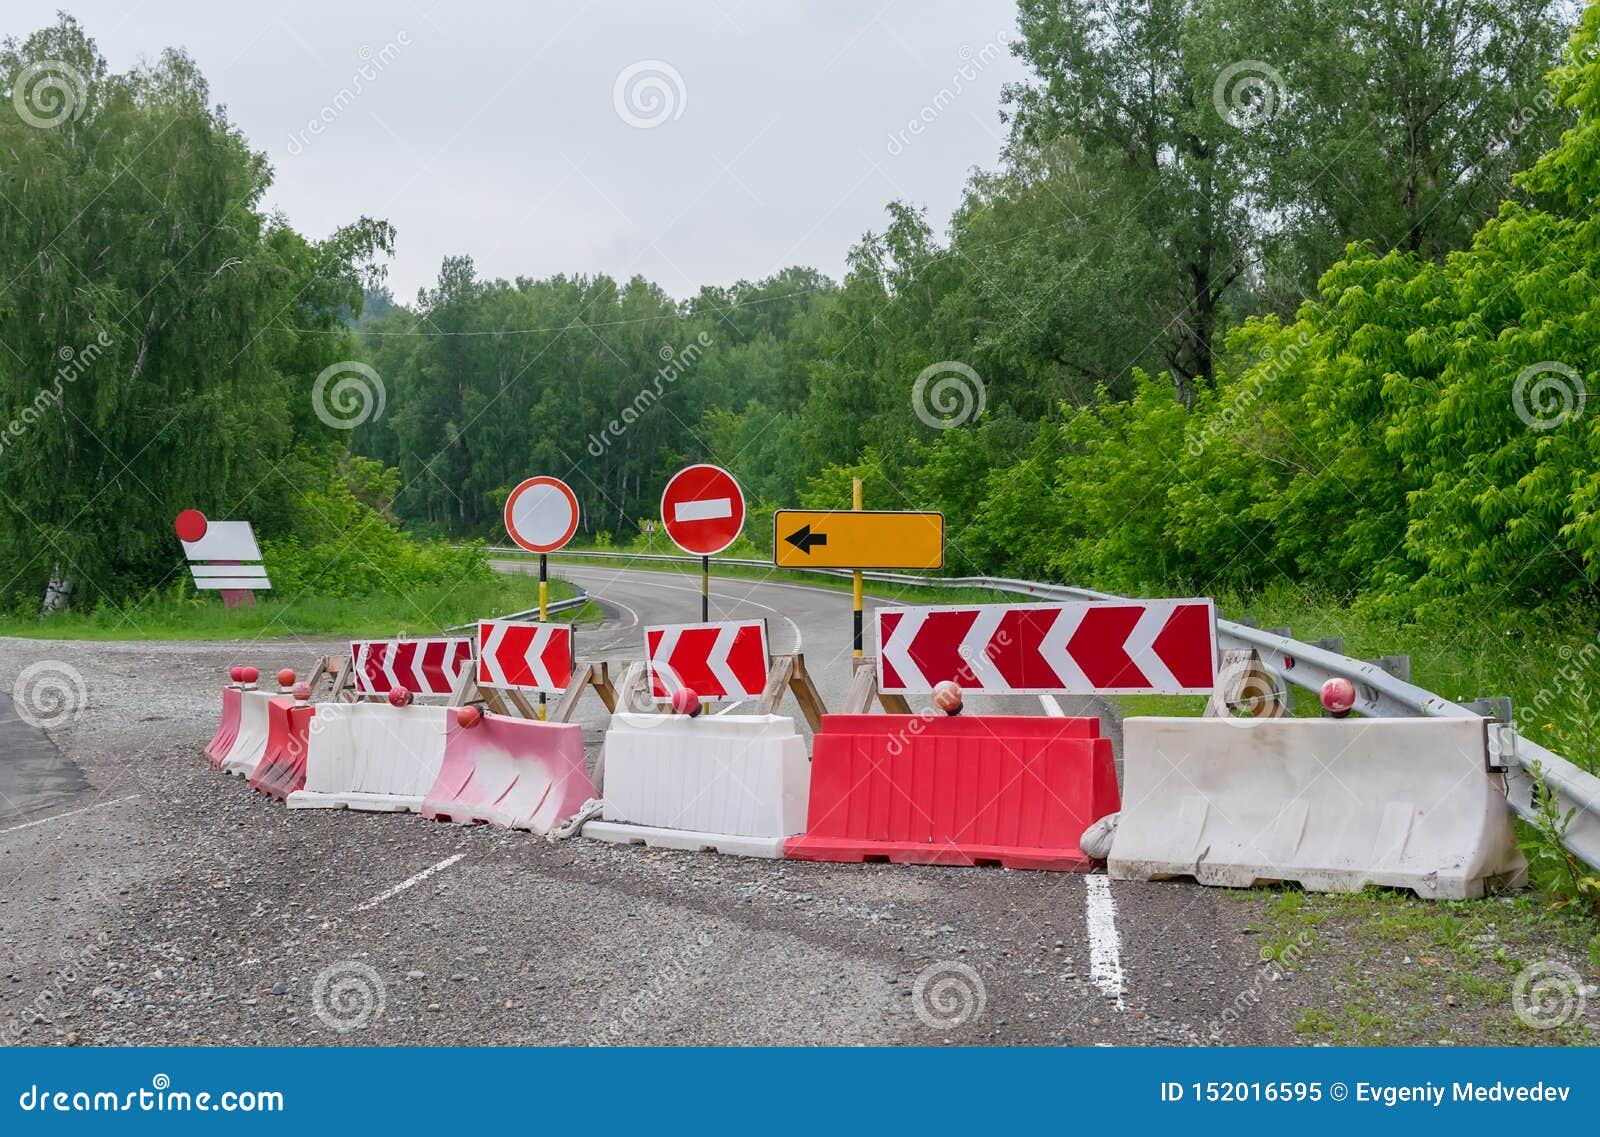 stop, detour, road signs, repair of the road